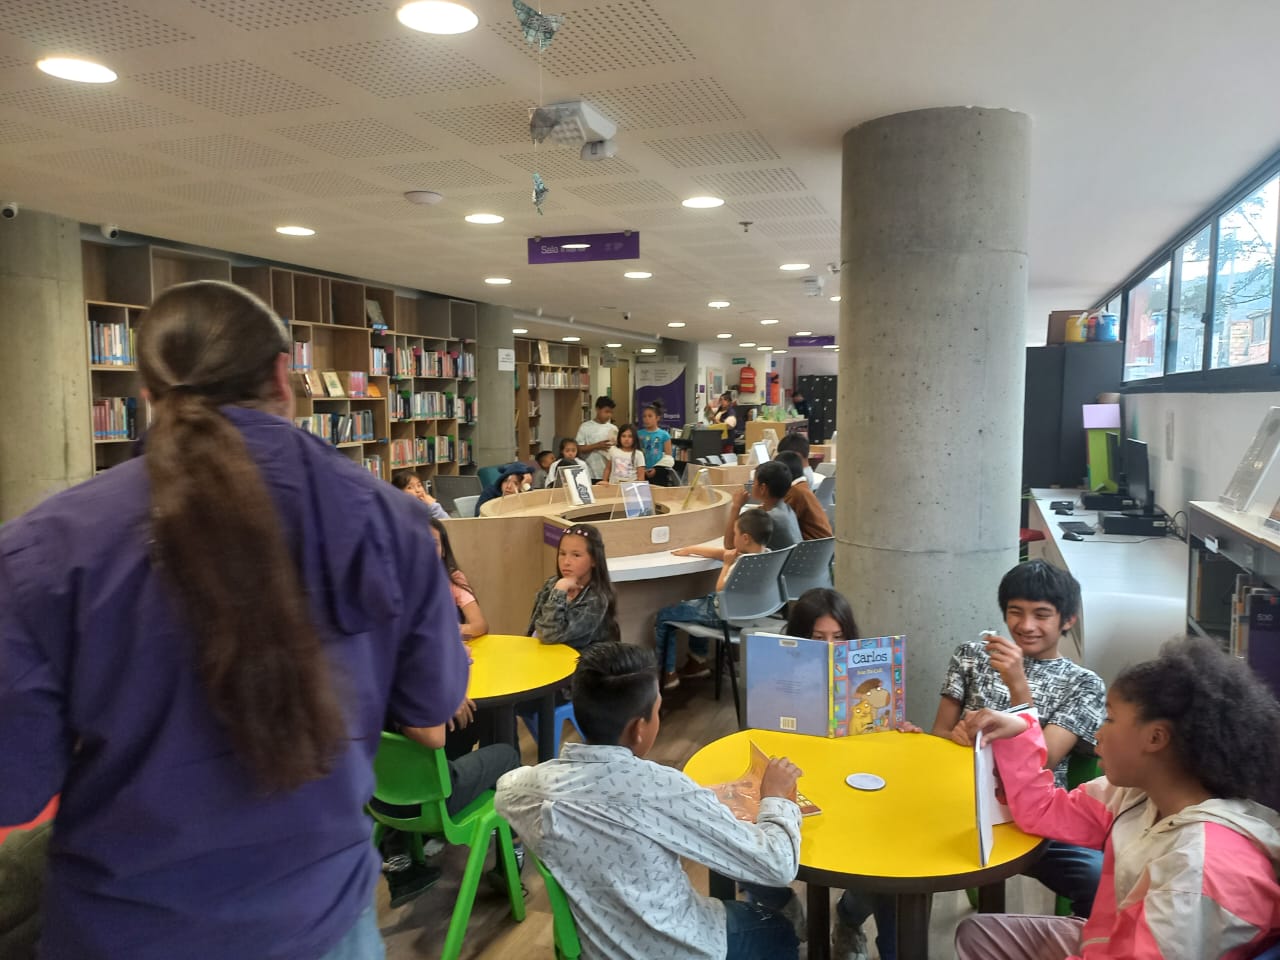 grupo de niños en un salón de biblioteca mientras un docente lee un libro en voz alta.